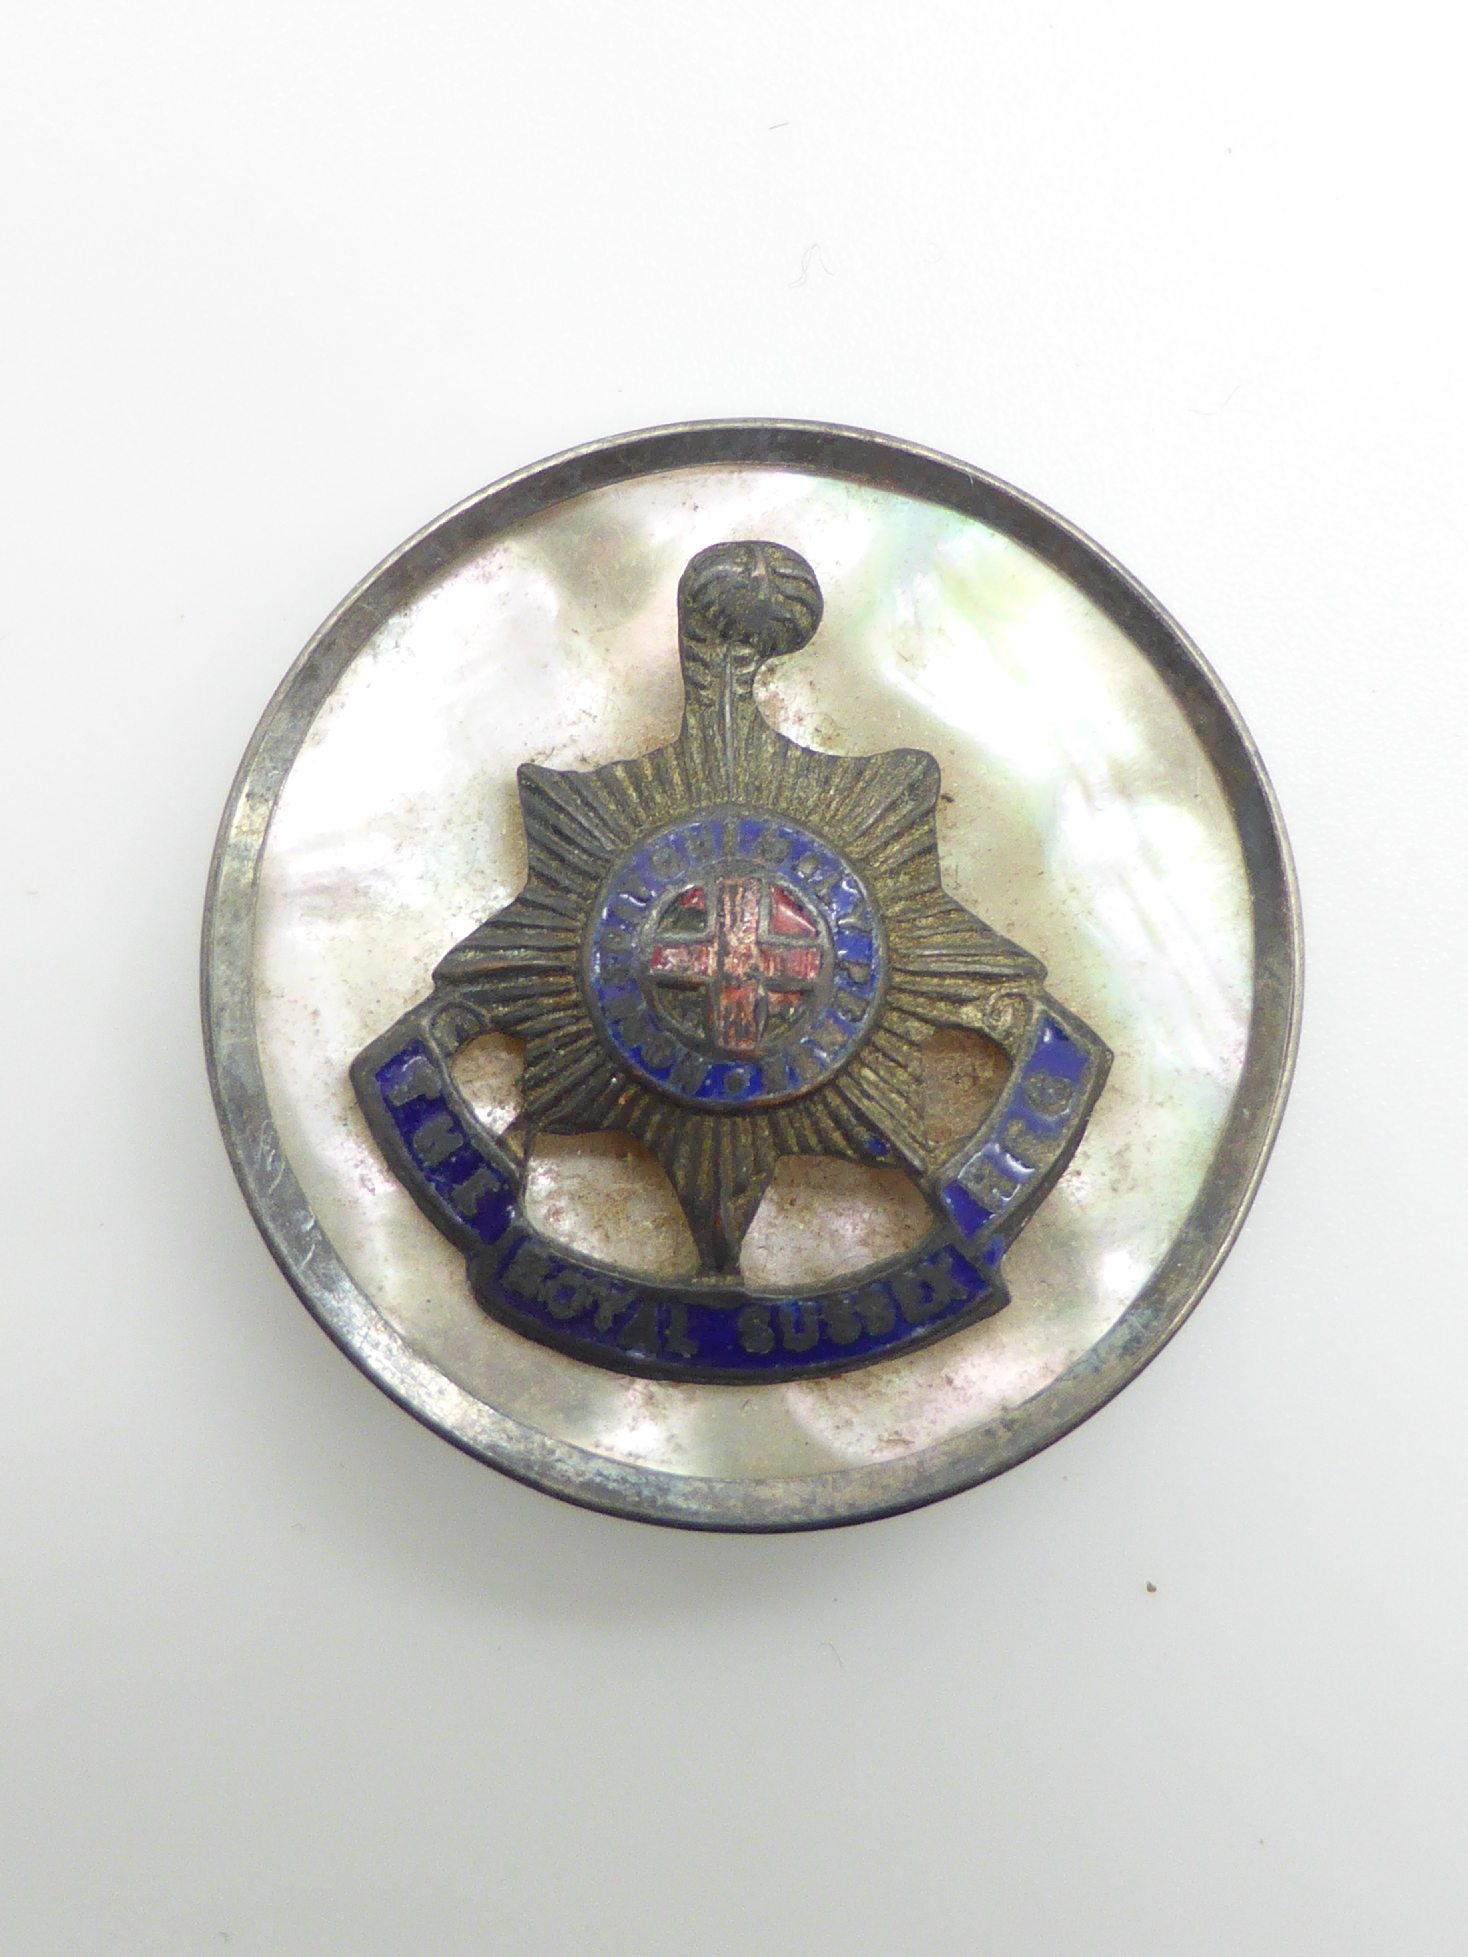 Elizabeth II Imperial Service Medal named to Mrs Jean Margaret Rose together with a WWII War Medal - Image 18 of 47